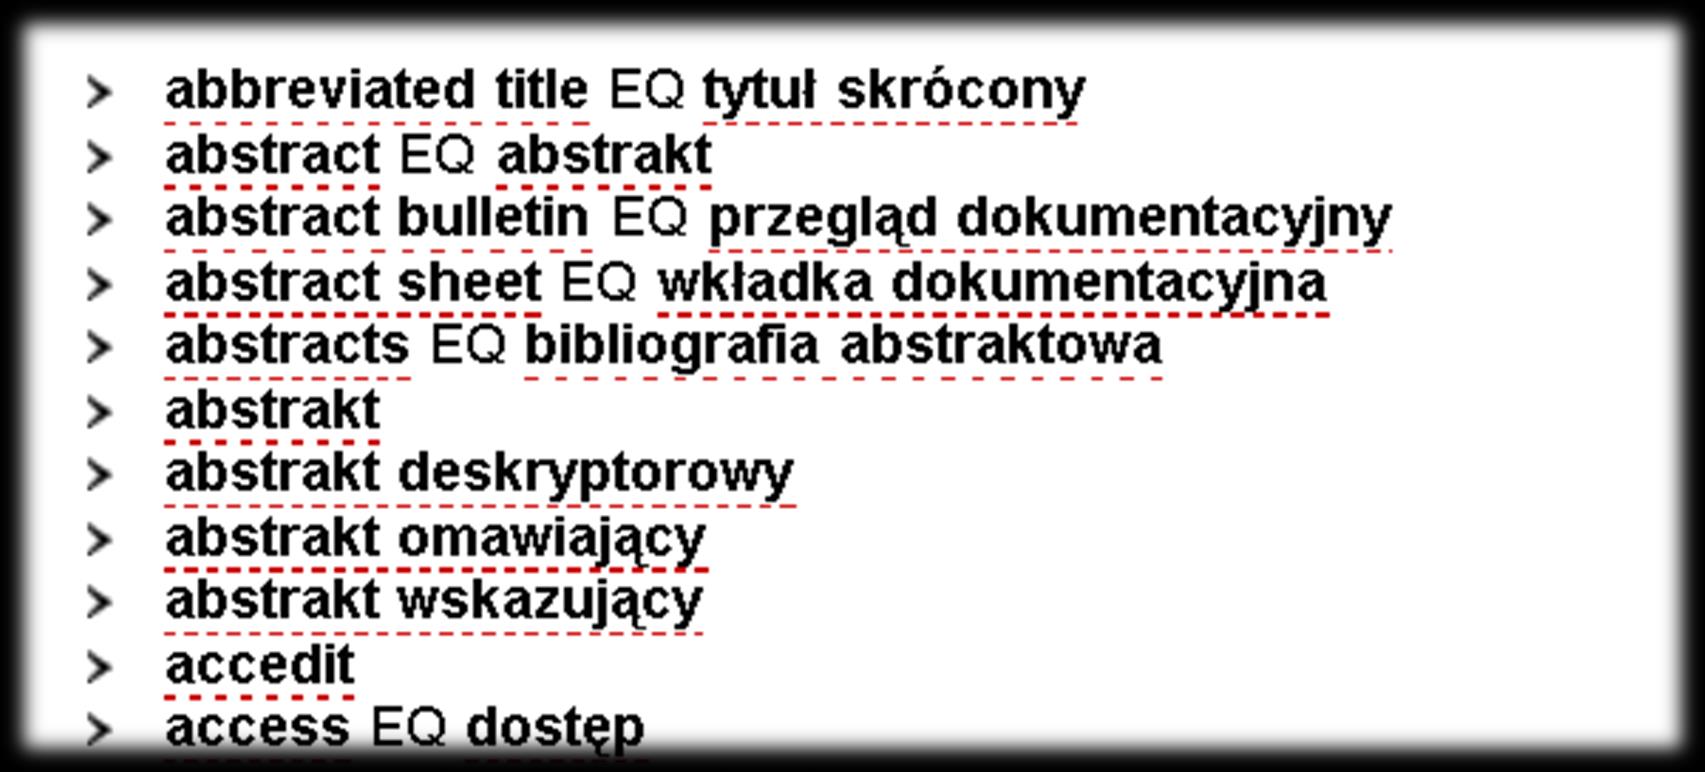 Sternik - struktura Dla wszystkich terminów angielskich ekwiwalentami są terminy polskie. Oprogramowanie TemaTres (http://www.